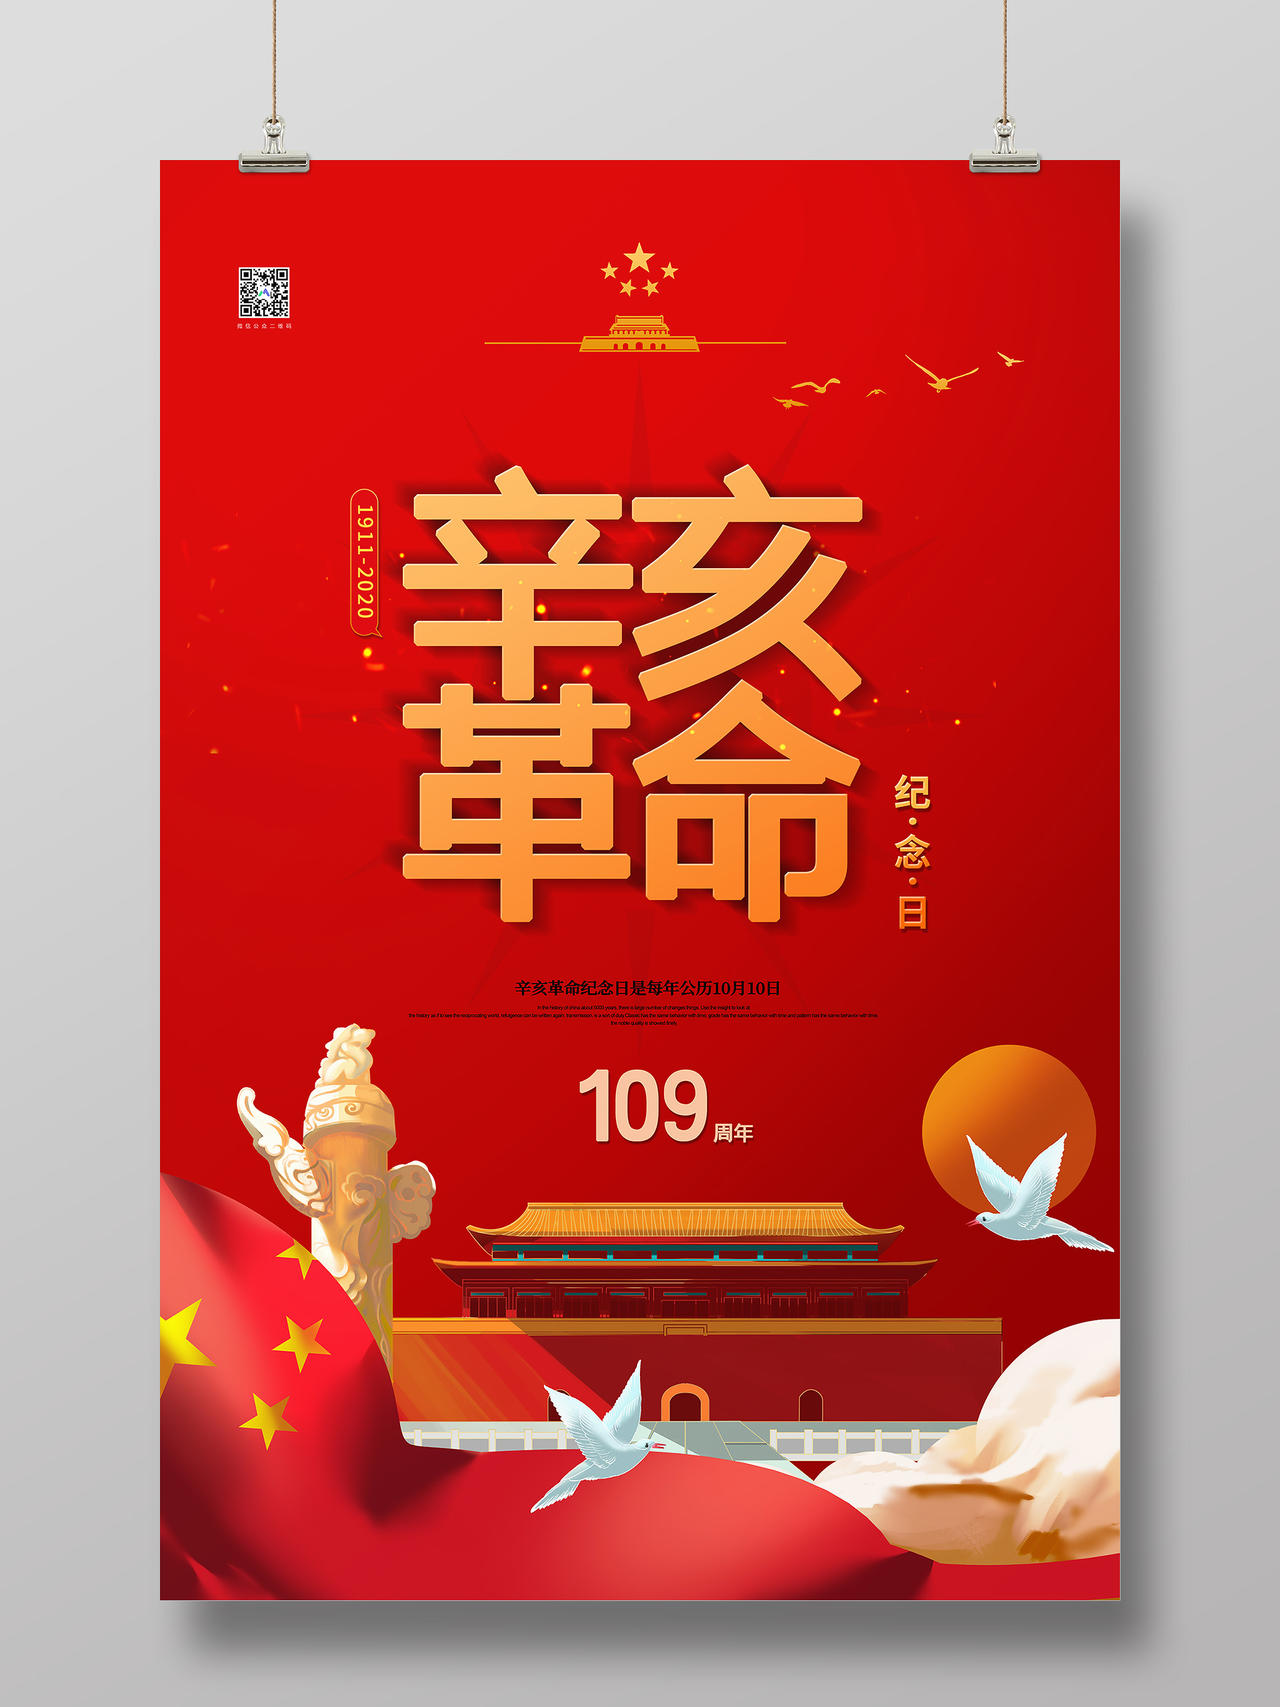 红色插画辛亥革命109周年纪念日宣传海报